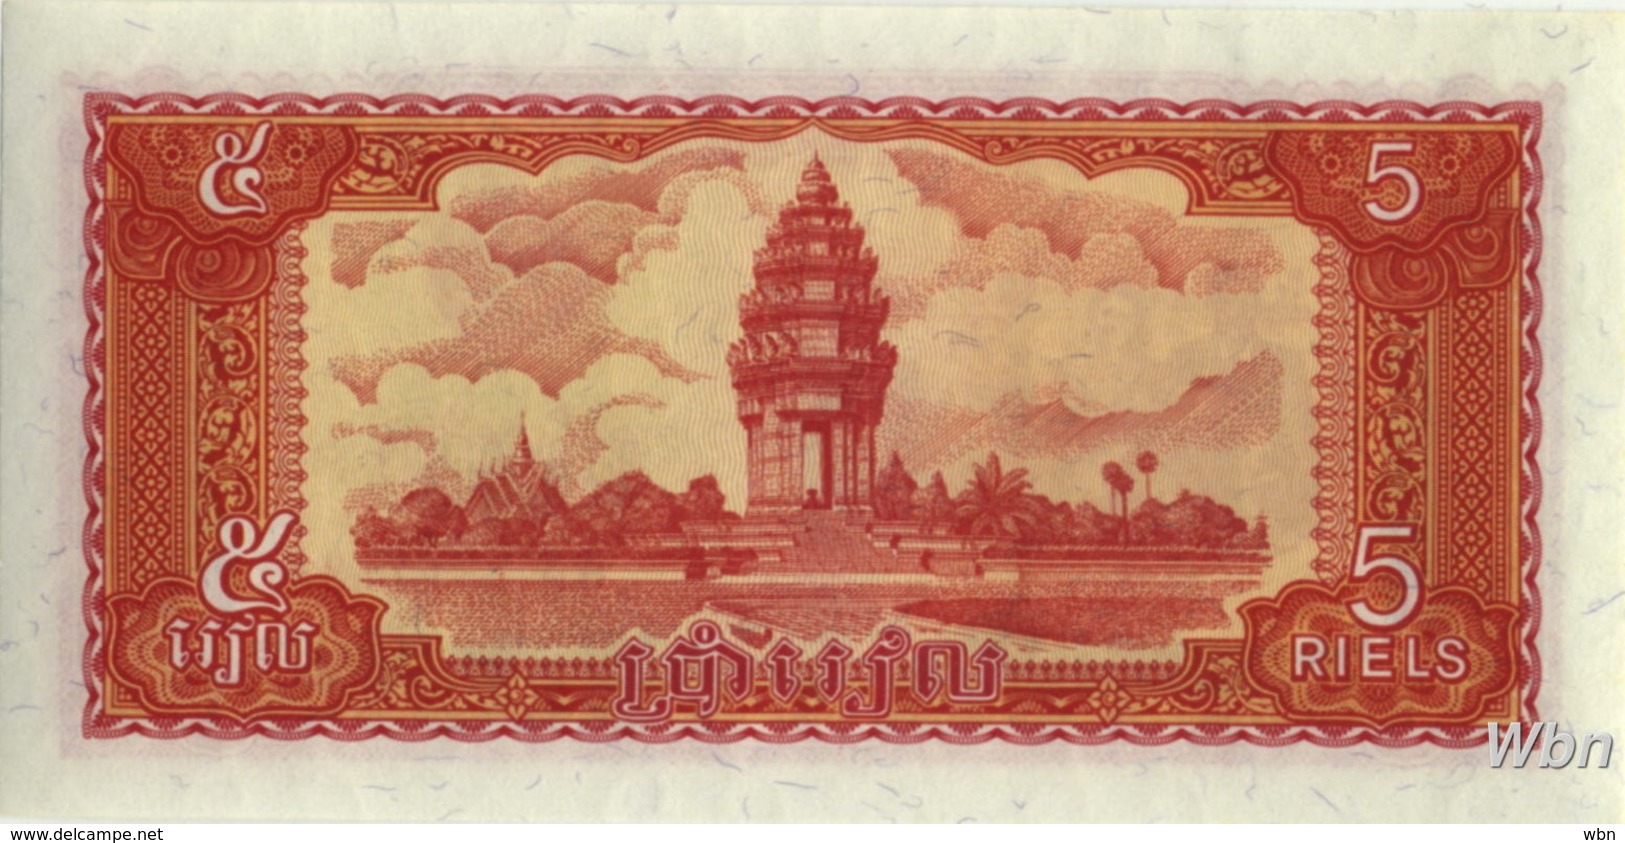 Cambodia 5 Riels (P33) 1987 -UNC- - Cambodge